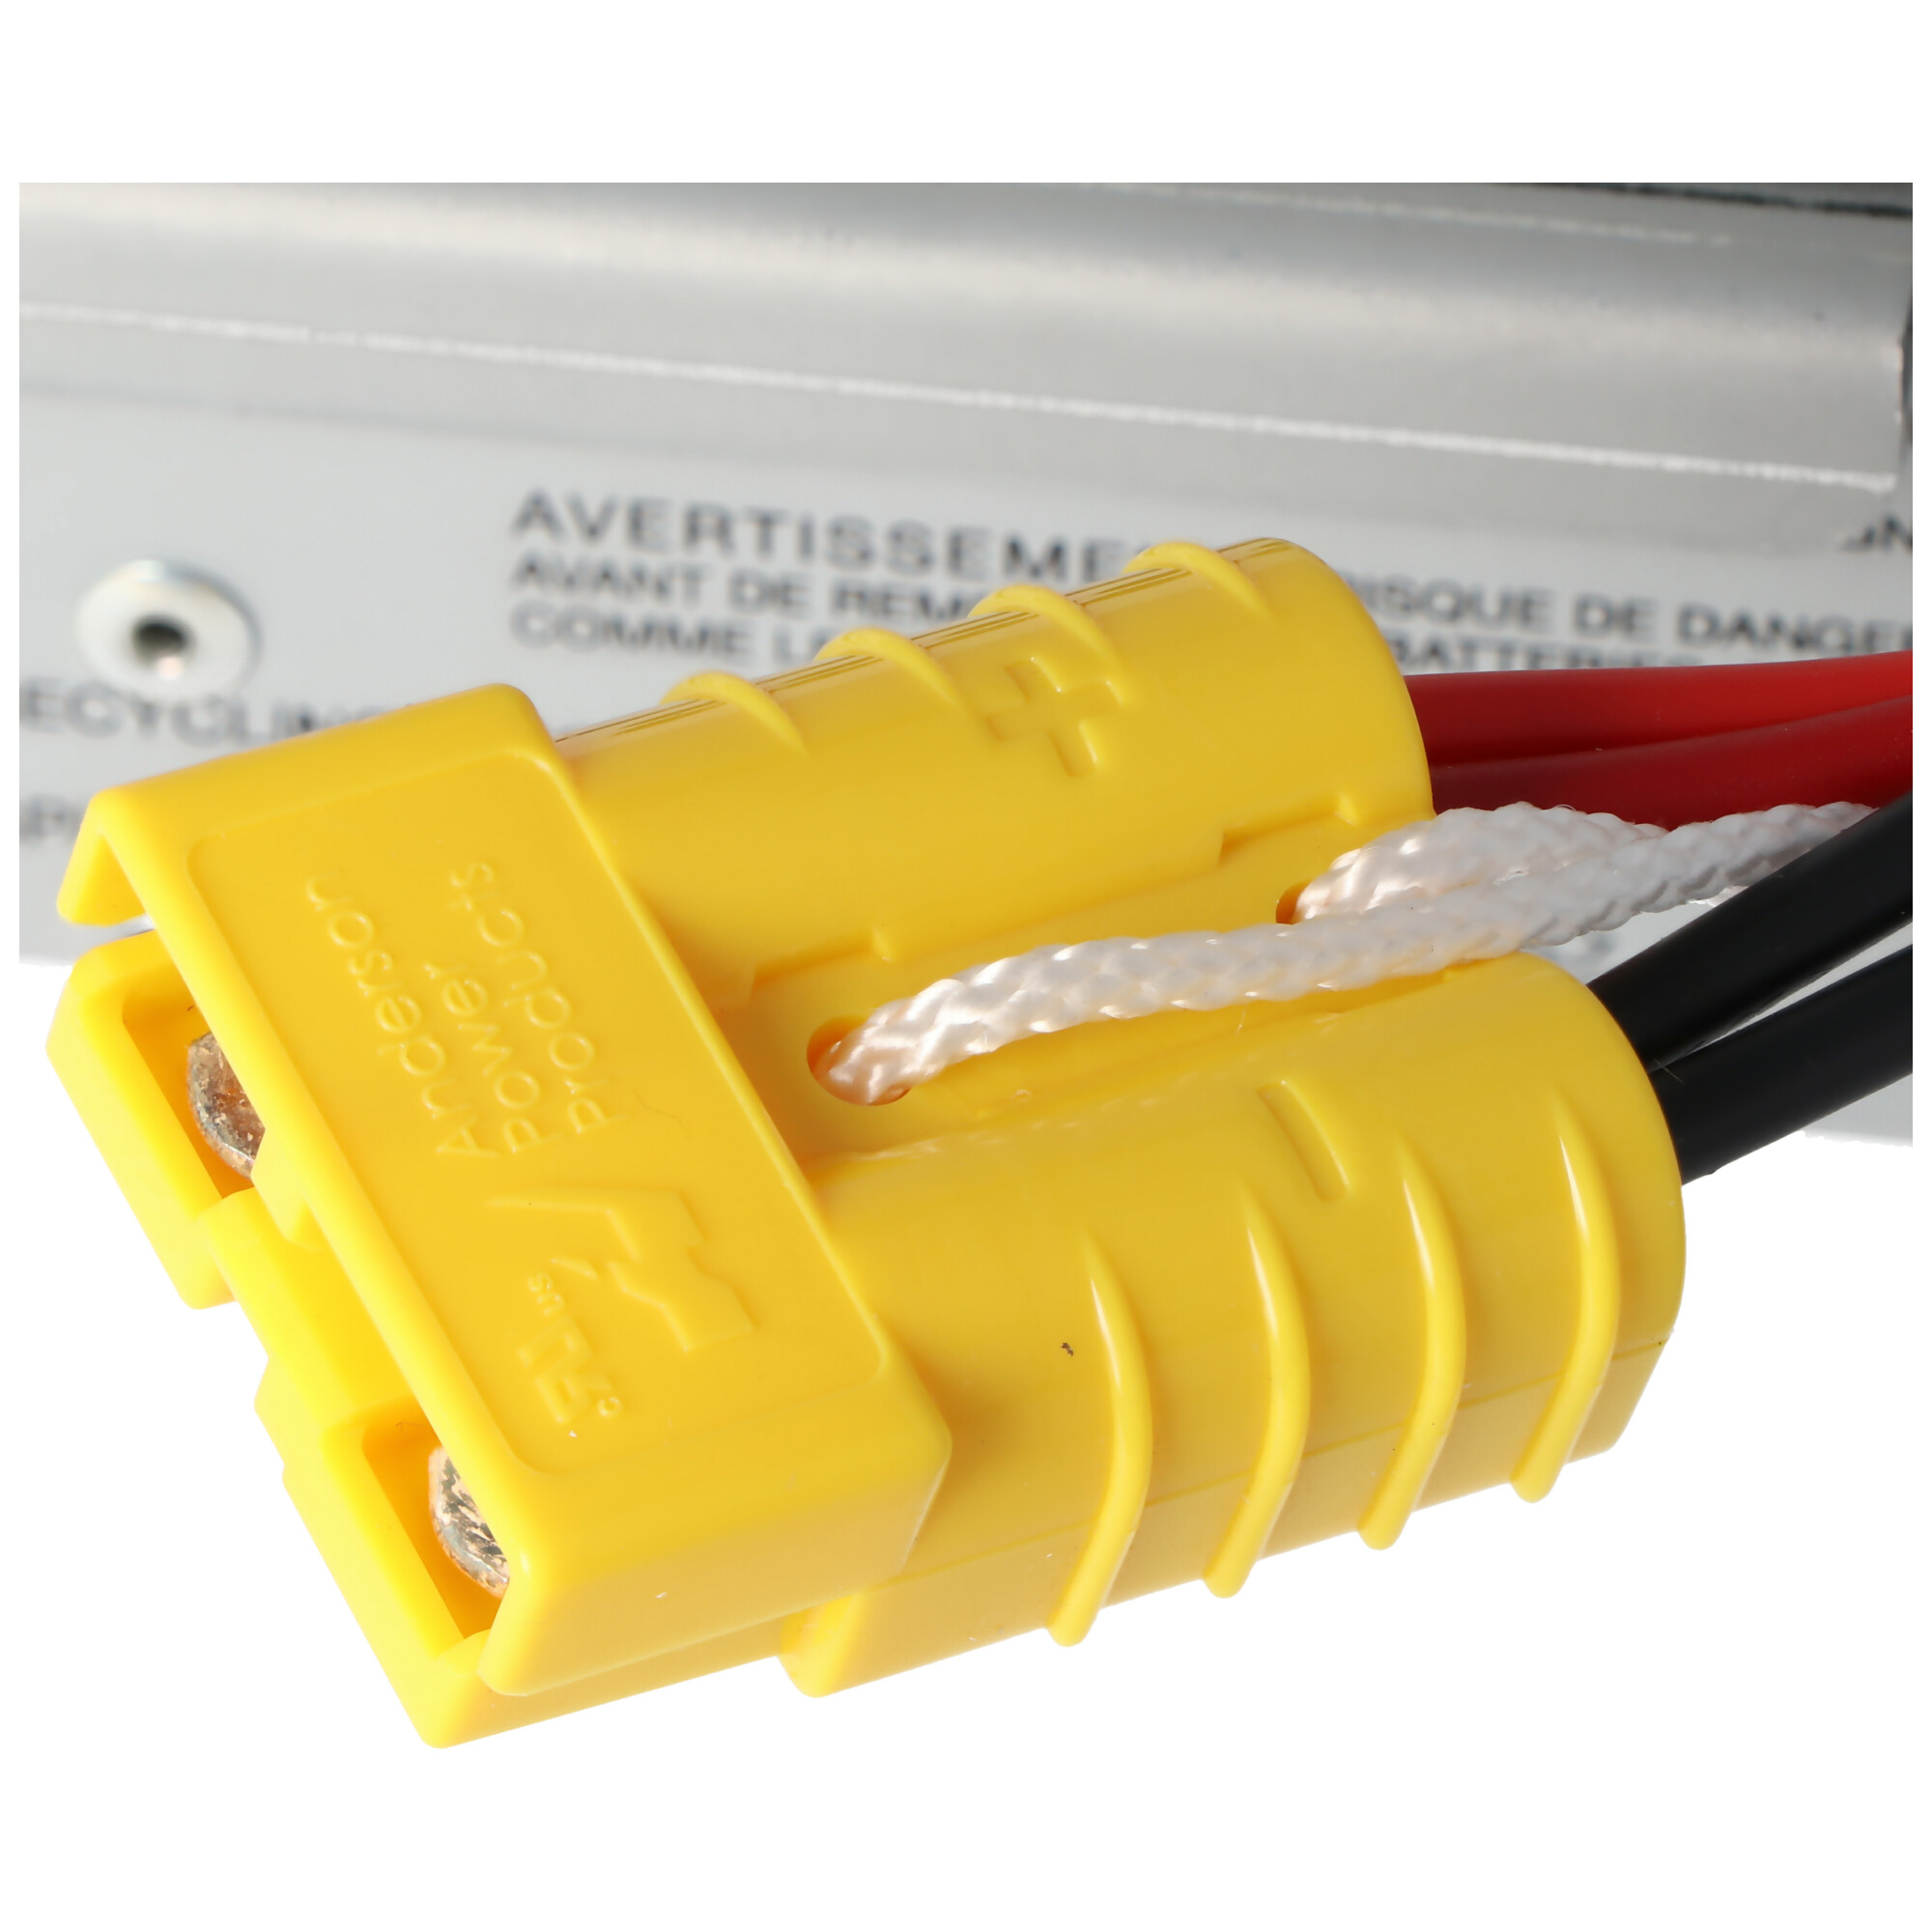 Nachbau Akku exakt passend für den APC-RBC24 Akku vormontiert mit Kabel und Stecker